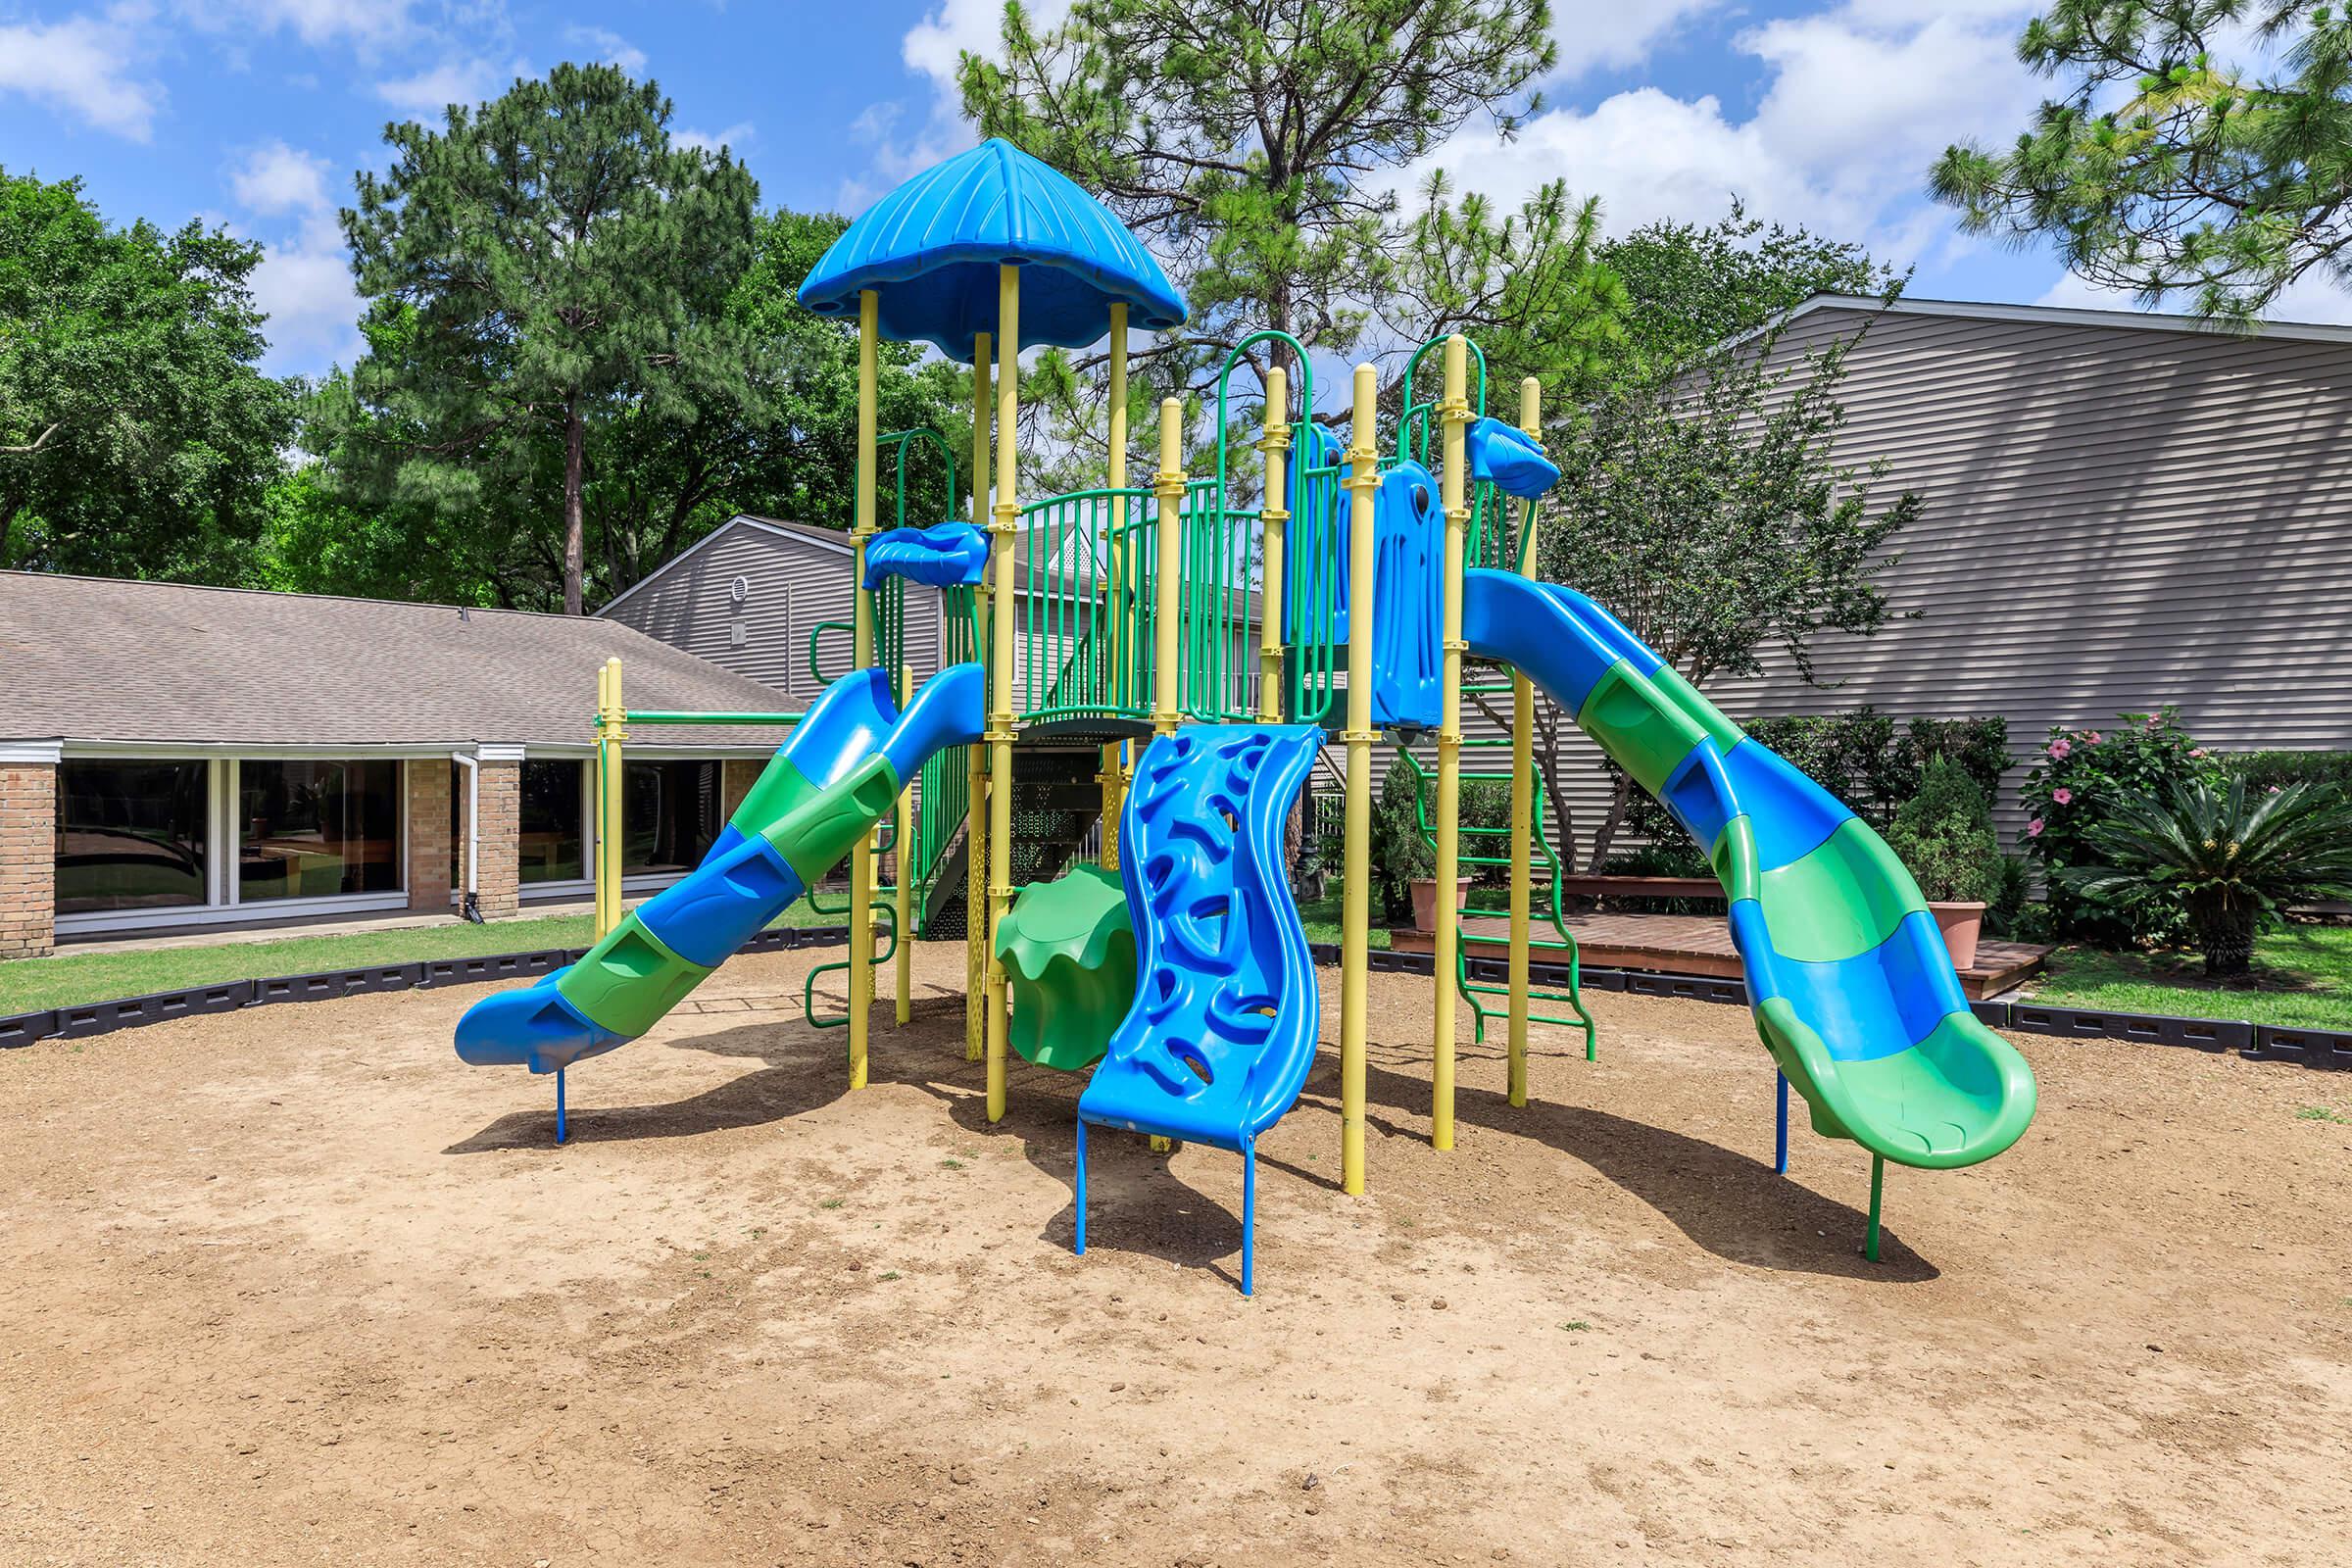 a playground with a blue umbrella